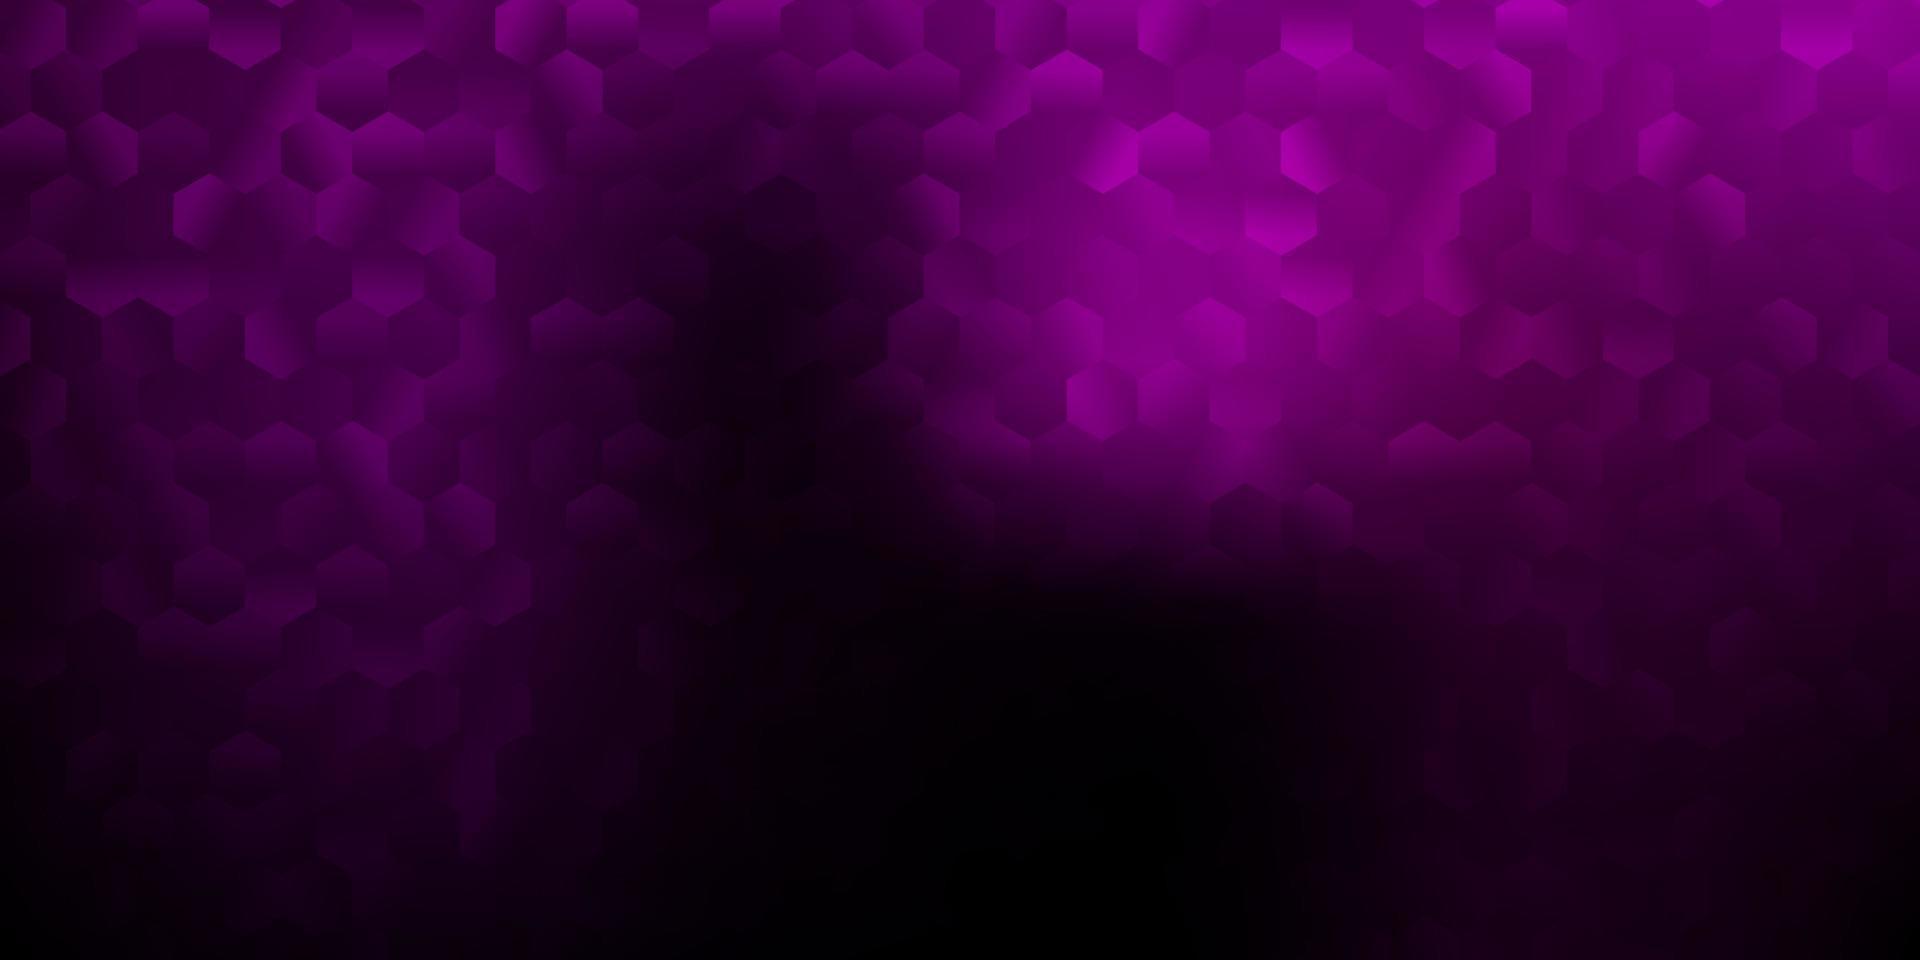 trama vettoriale viola scuro con esagoni colorati.